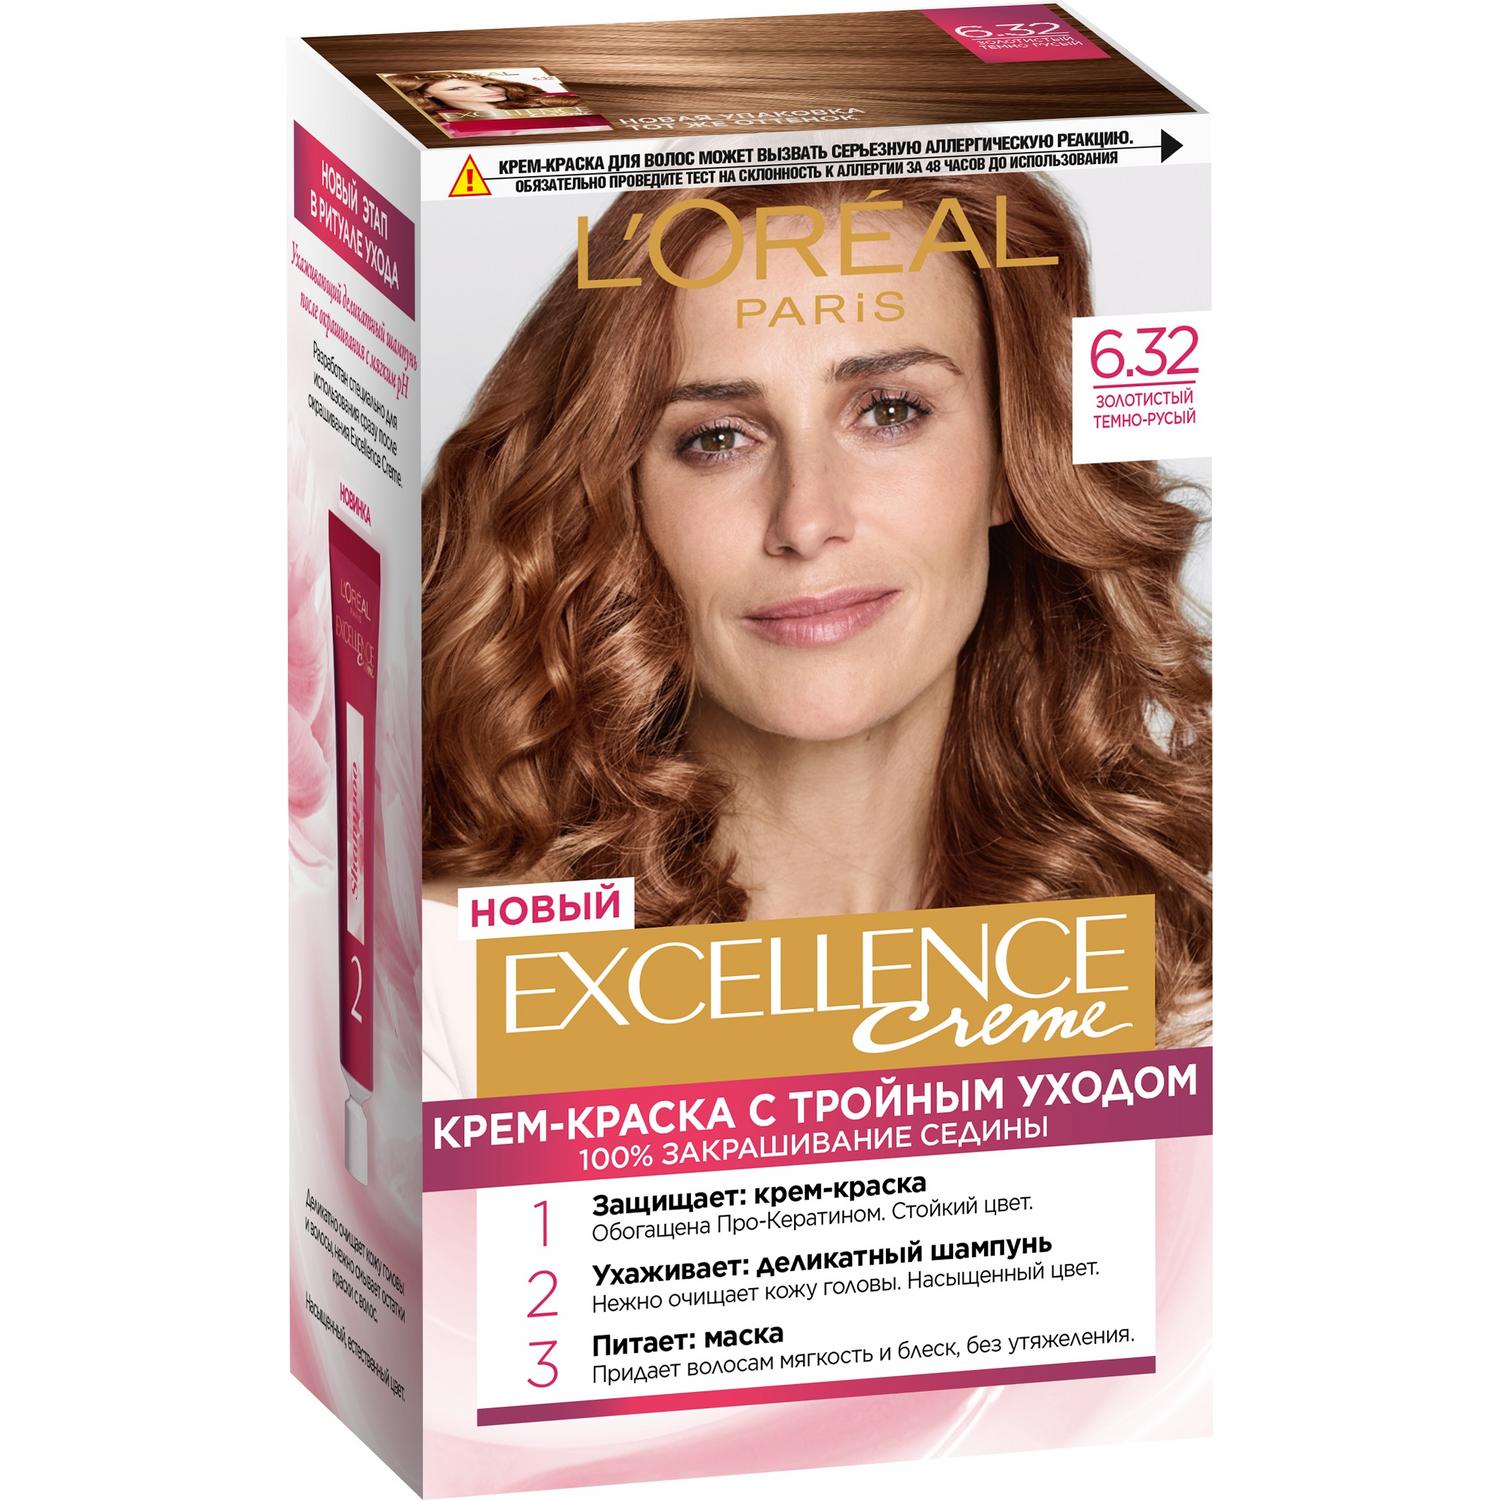 Краска L’Oreal Excellence Creme 6.32 Золотистый темно-русый (A7140325) краска для волос l’oreal excellence creme 6 темно русый